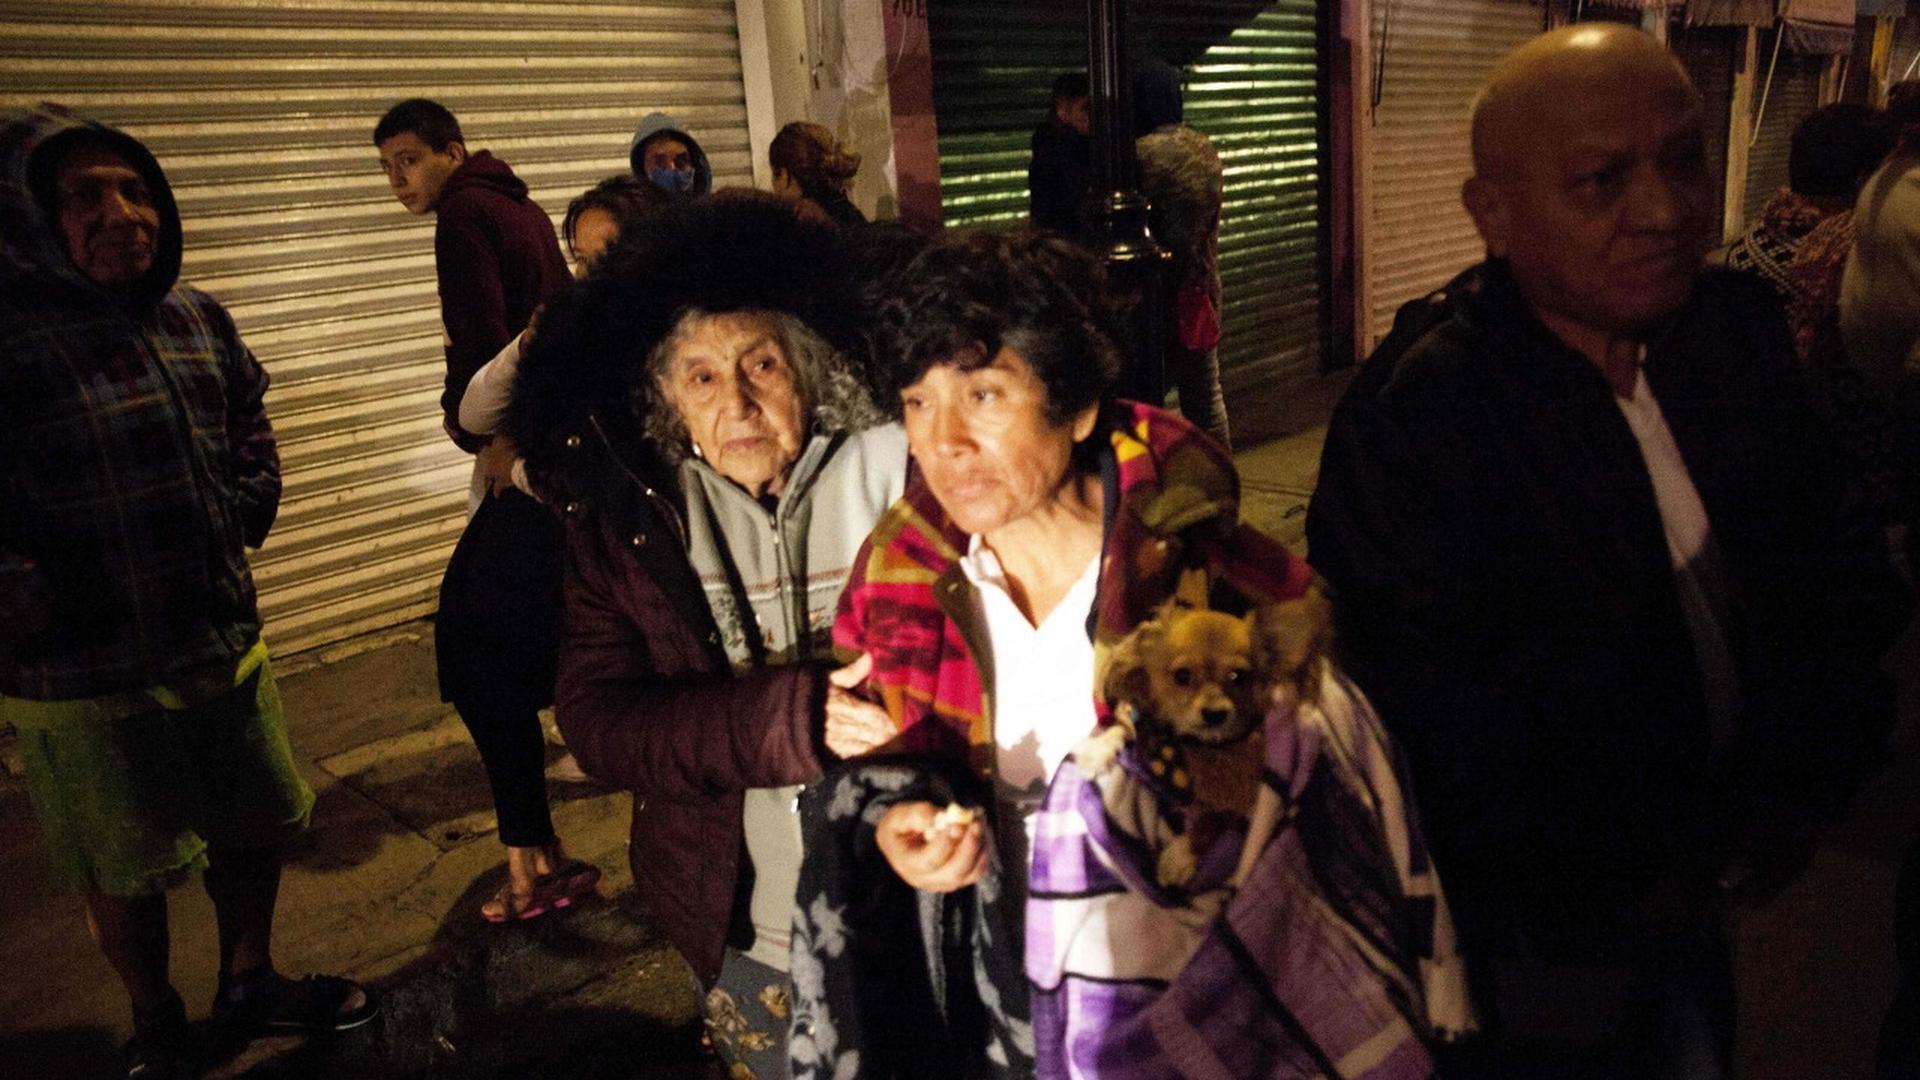 Des habitants se rassemblent dans une rue de la ville de Mexico où le tremblement de terre de magnitude 8,6 sur l'échelle de Richter a été ressenti, bien que son épicentre soit au sud du pays, dans l'Etat du Chiapas (environ 800 km).
